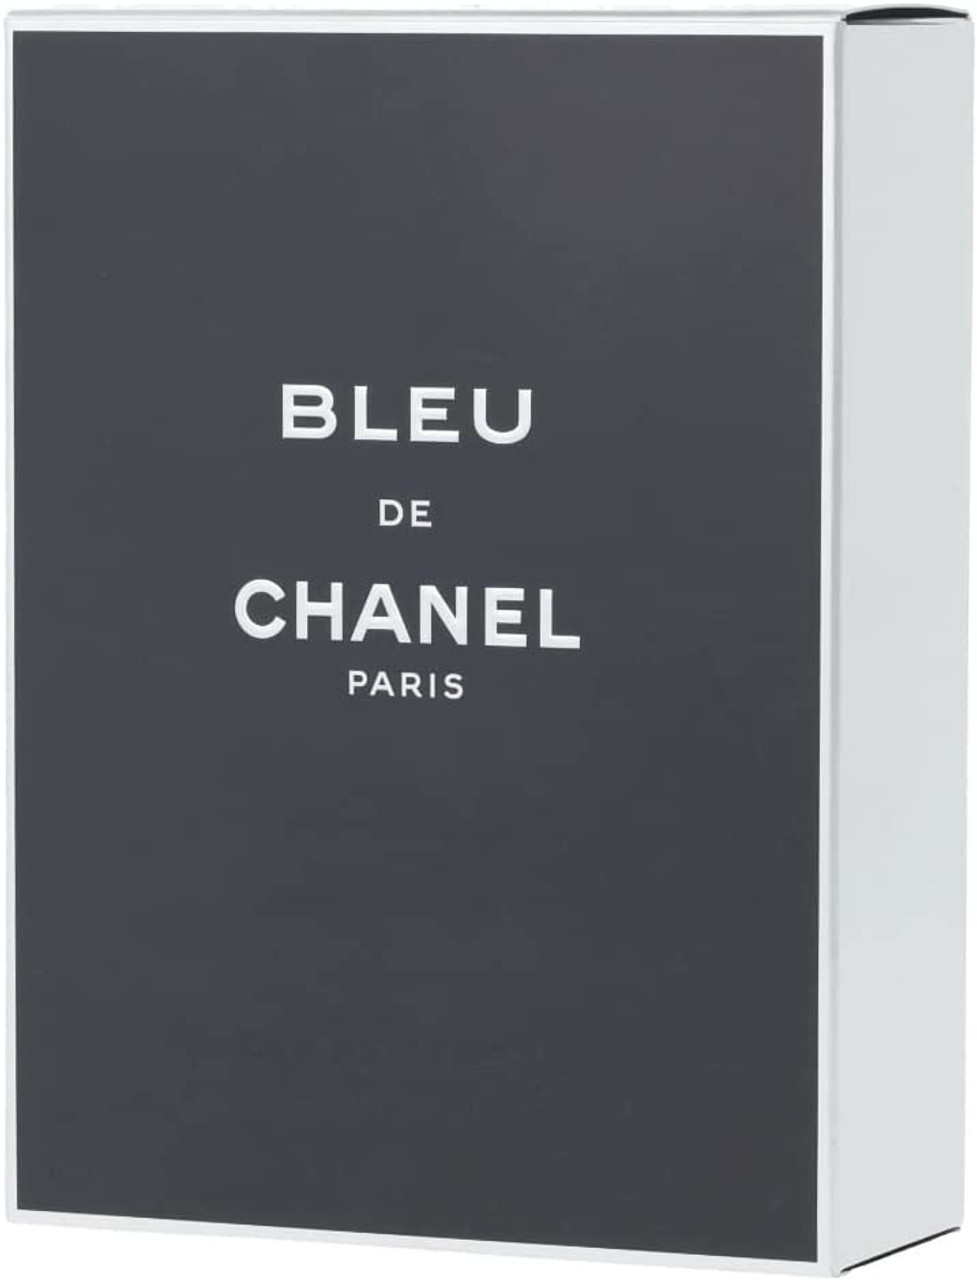 Bleu de Chanel by Chanel Eau de Toilette 100ml